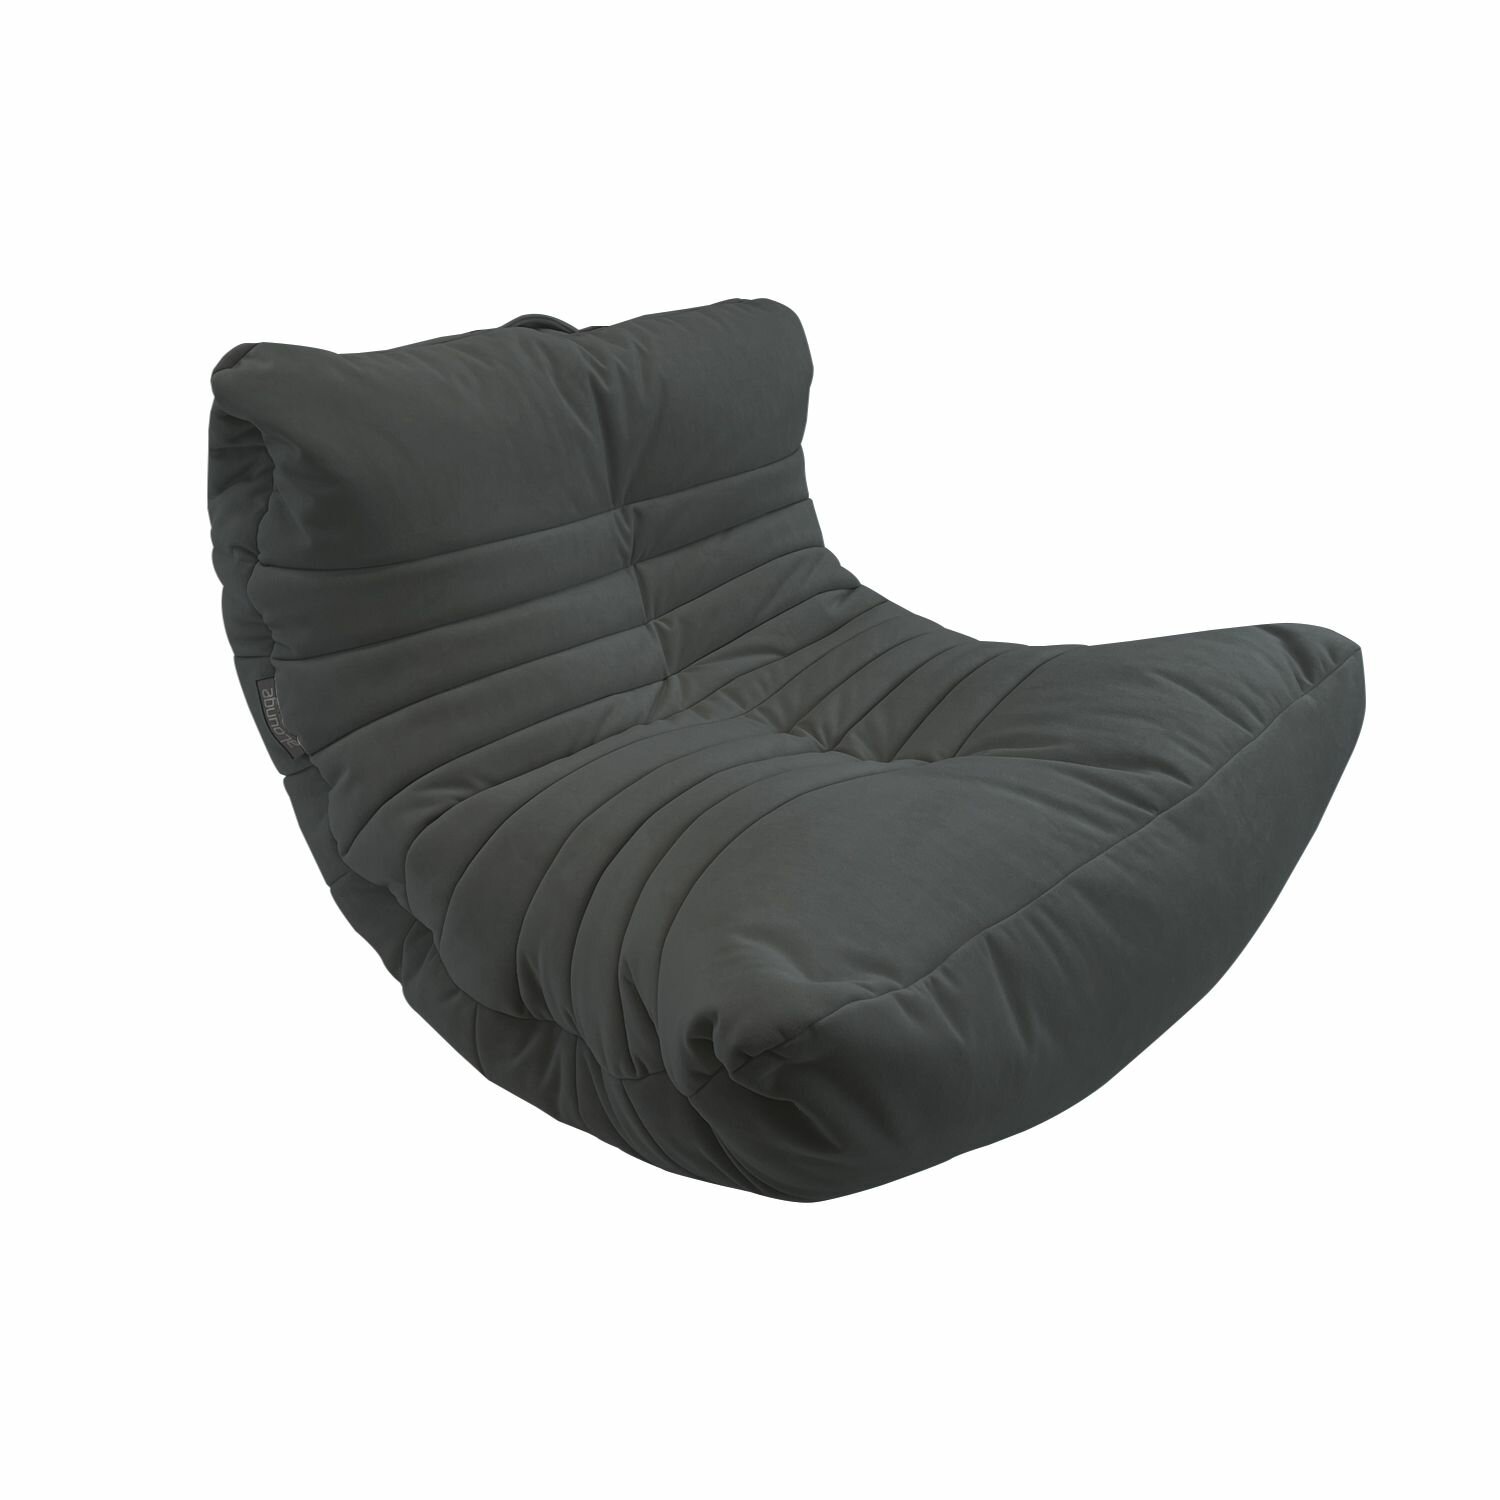 Бескаркасное дизайнерское кресло для отдыха aLounge - Acoustic Sofa - Black Sapphire (велюр, черно-серый) - лаунж мебель в гостиную, спальню, детскую, офис, на балкон